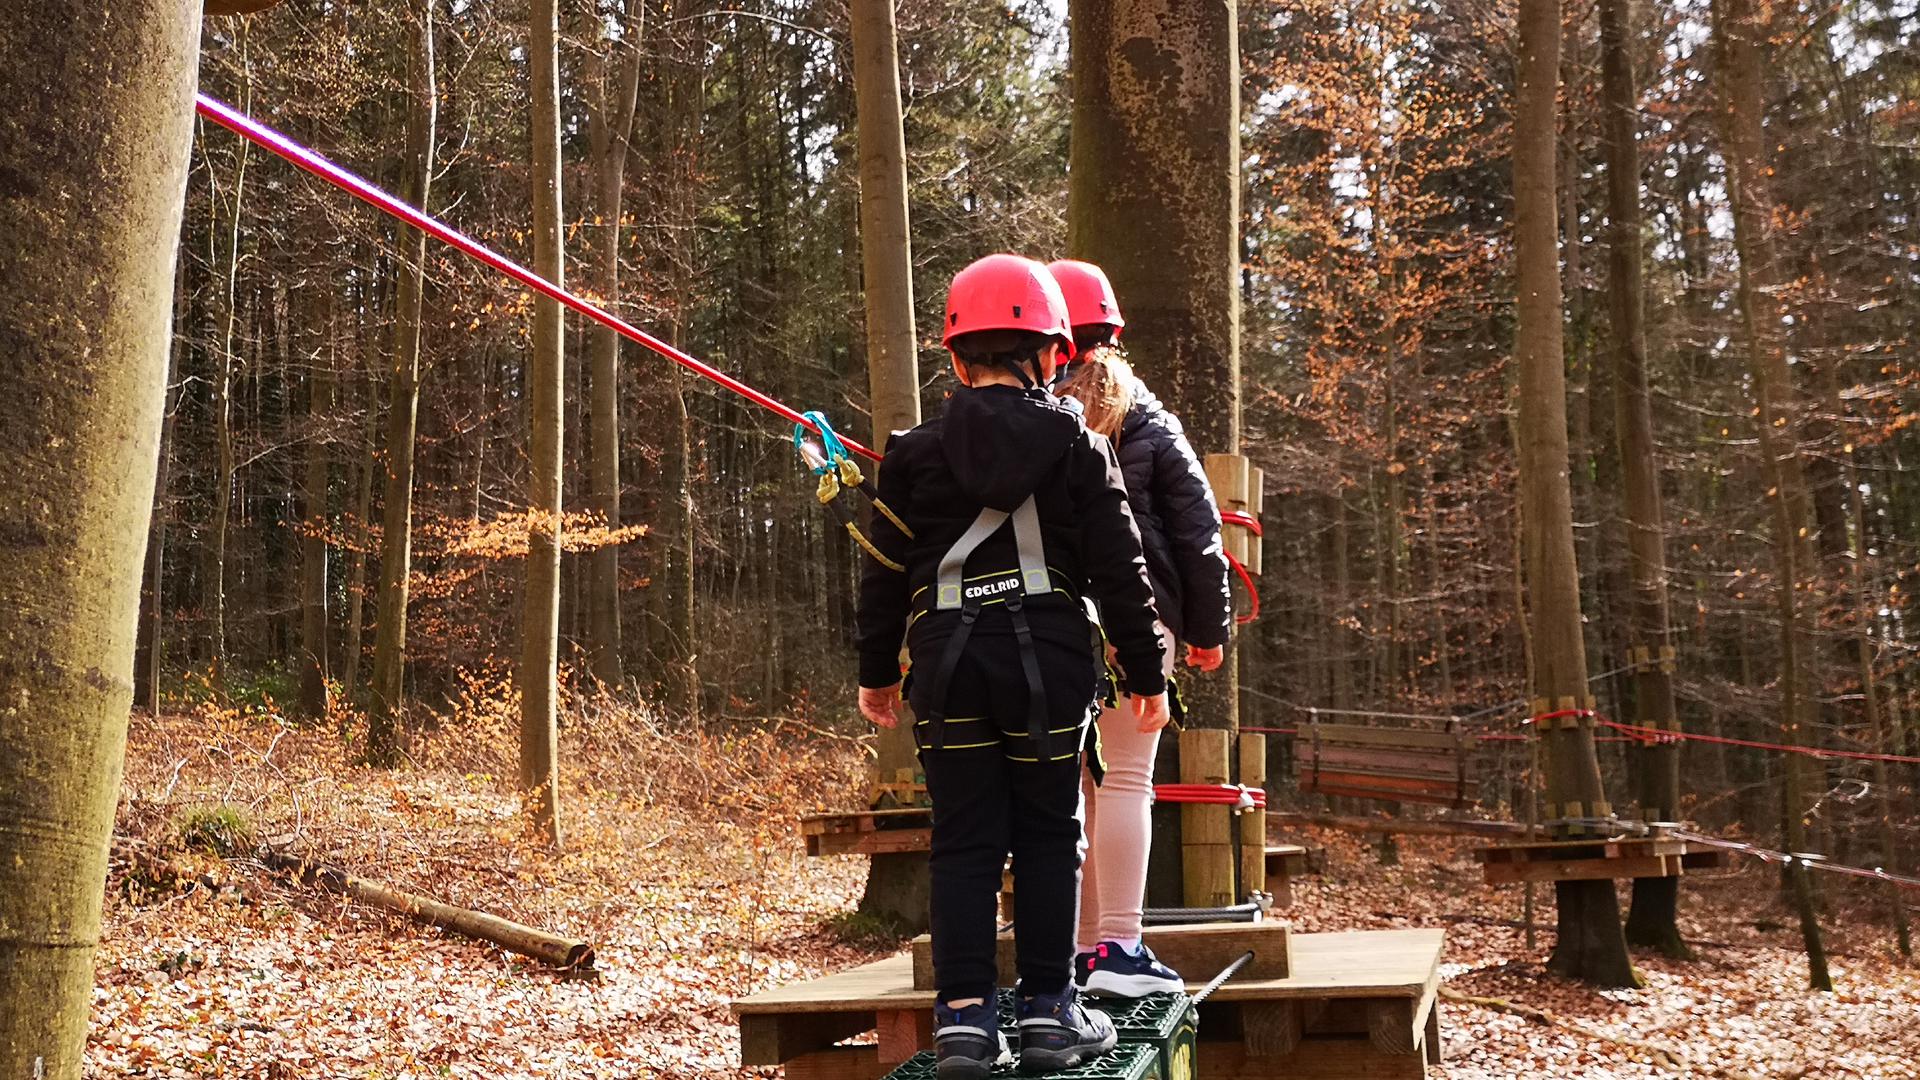 Balanceakt: Sofie und Elias haben großen Spaß im Kletterwald. Die drei Kidsparcours haben die beiden schon lange einmal durch - und sind begeistert.